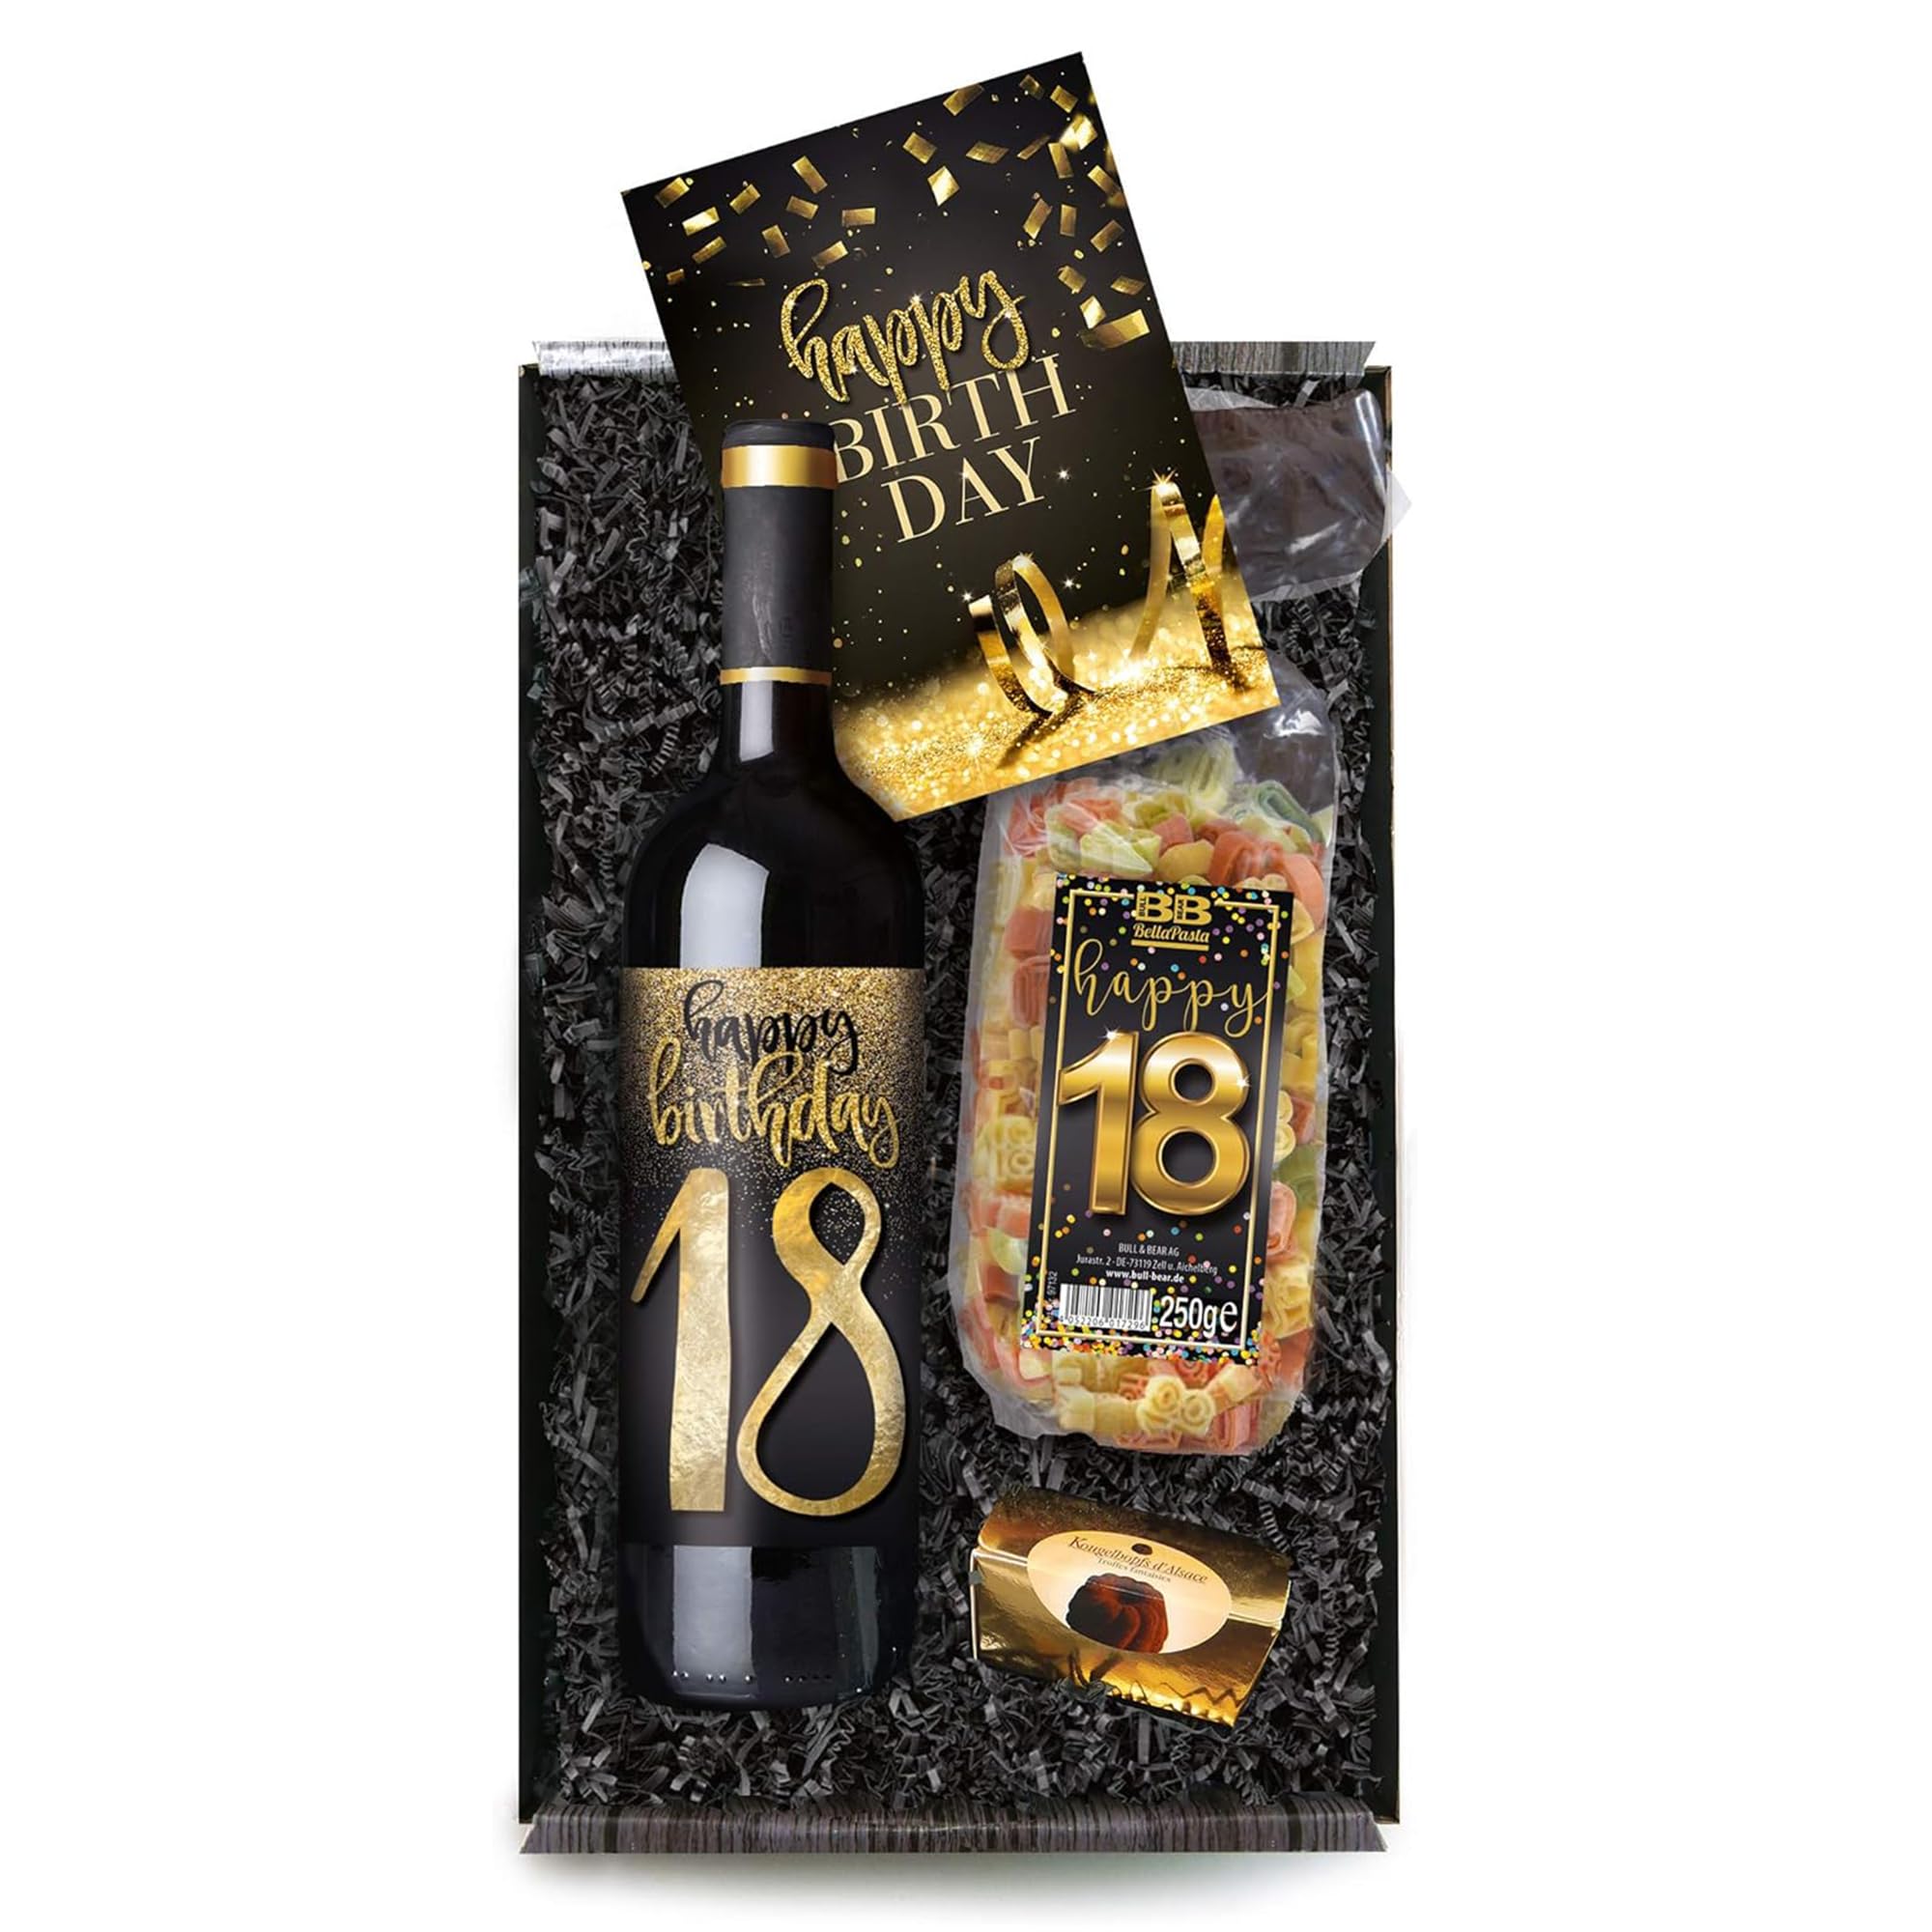 Bull & Bear Geschenkbox "Happy Birthday 18", Set mit Rotwein, Nudeln und Geburtstagskarte, Geschenk zum 18. Geburtstag